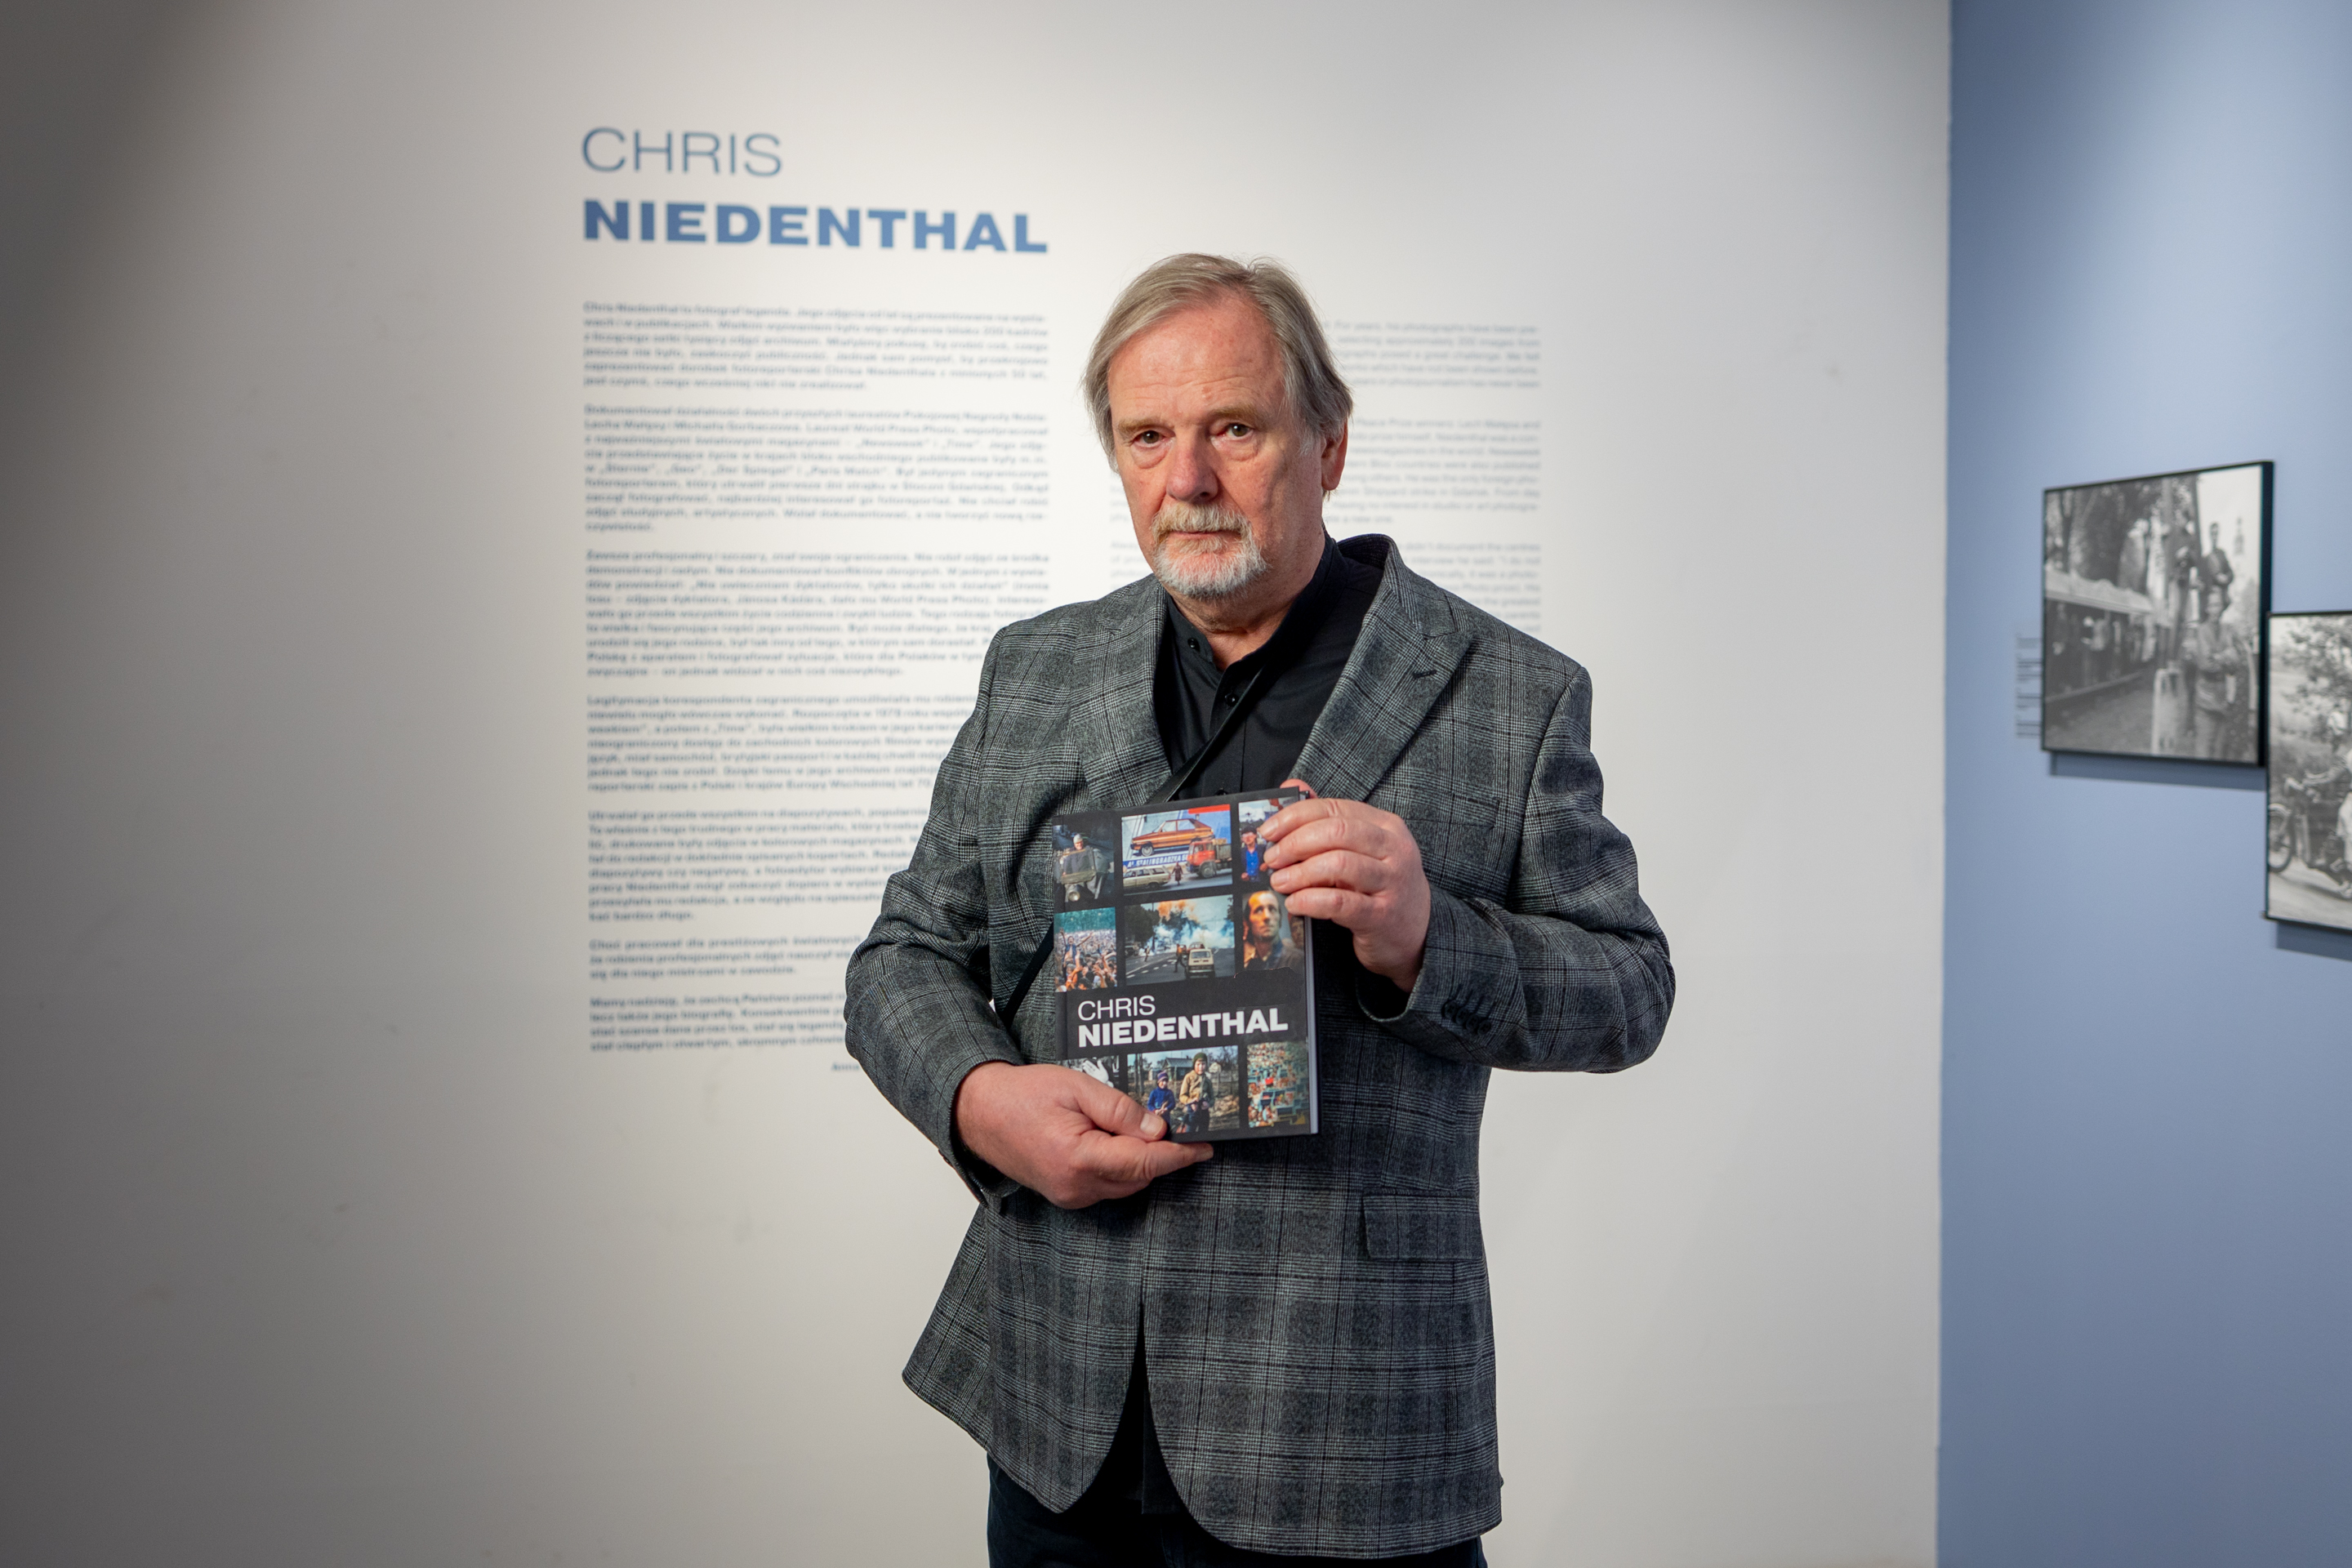 Zwycięzca lub zwyciężczyni aukcji otrzyma także album CHRIS NIEDENTHAL towarzyszący wystawie. Fot. Robert Olszański / DSH